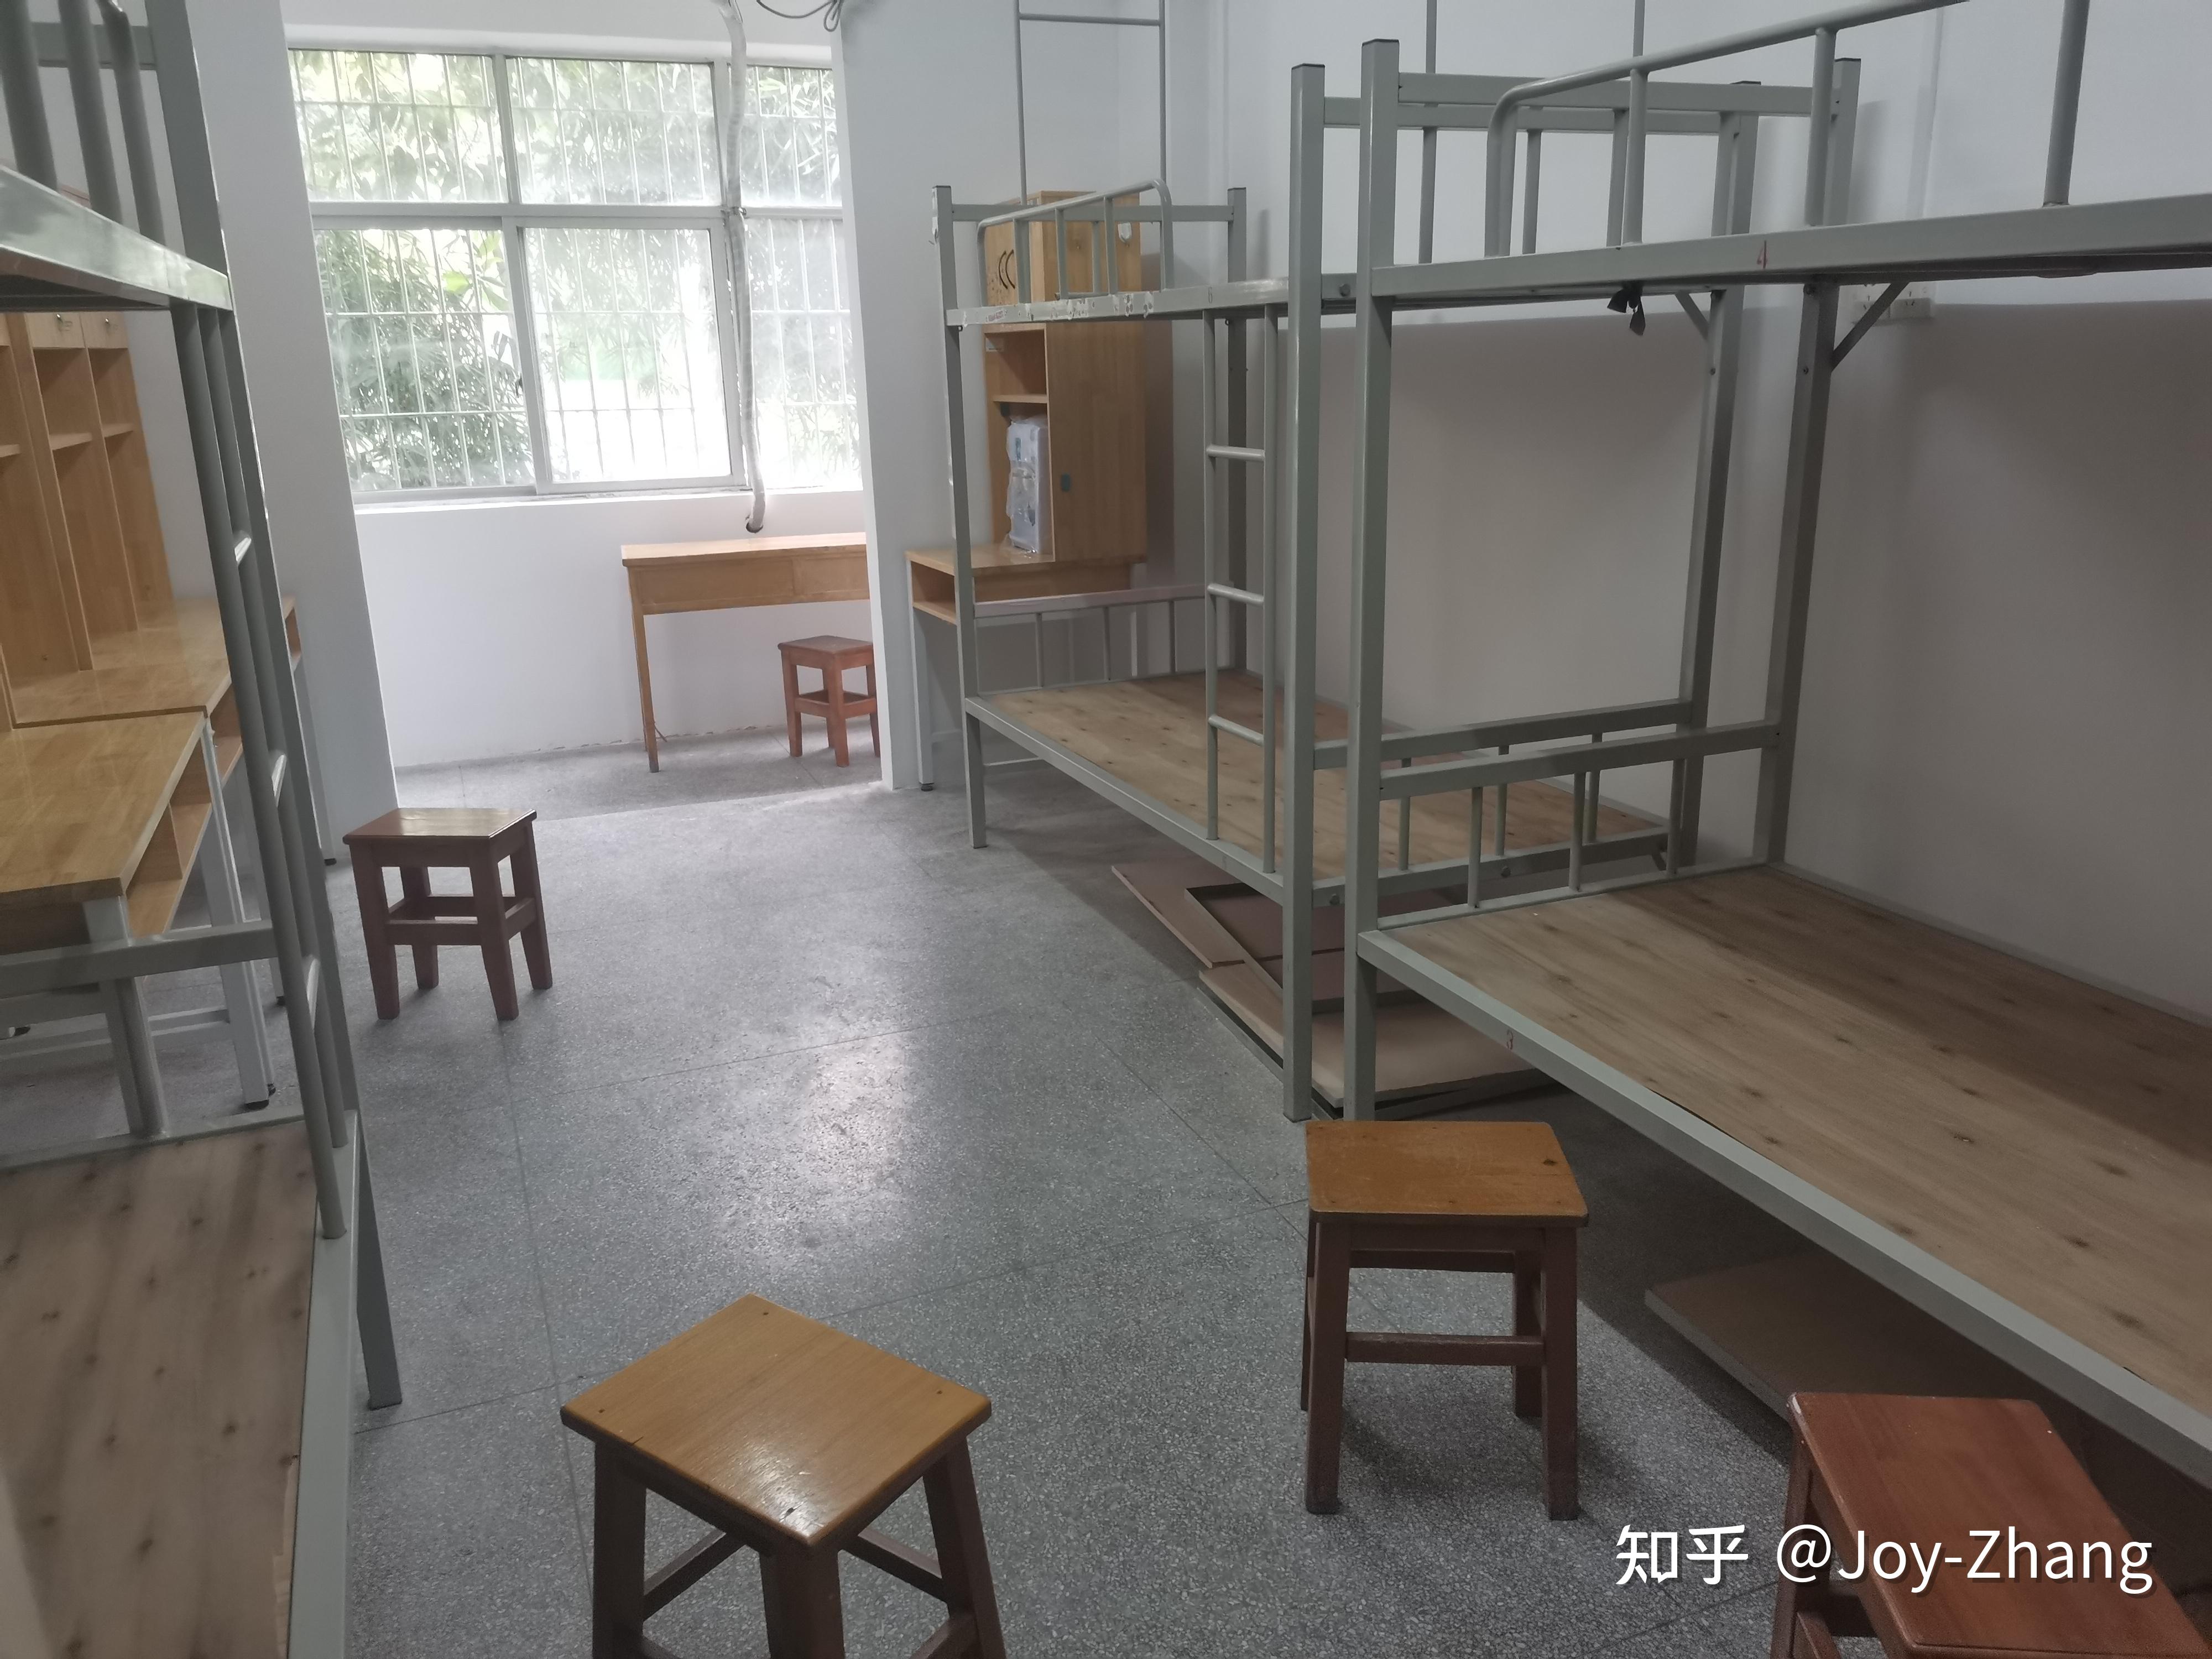 广东科学技术职业学院广州校区的宿舍条件如何 有无独卫空调洗衣机?